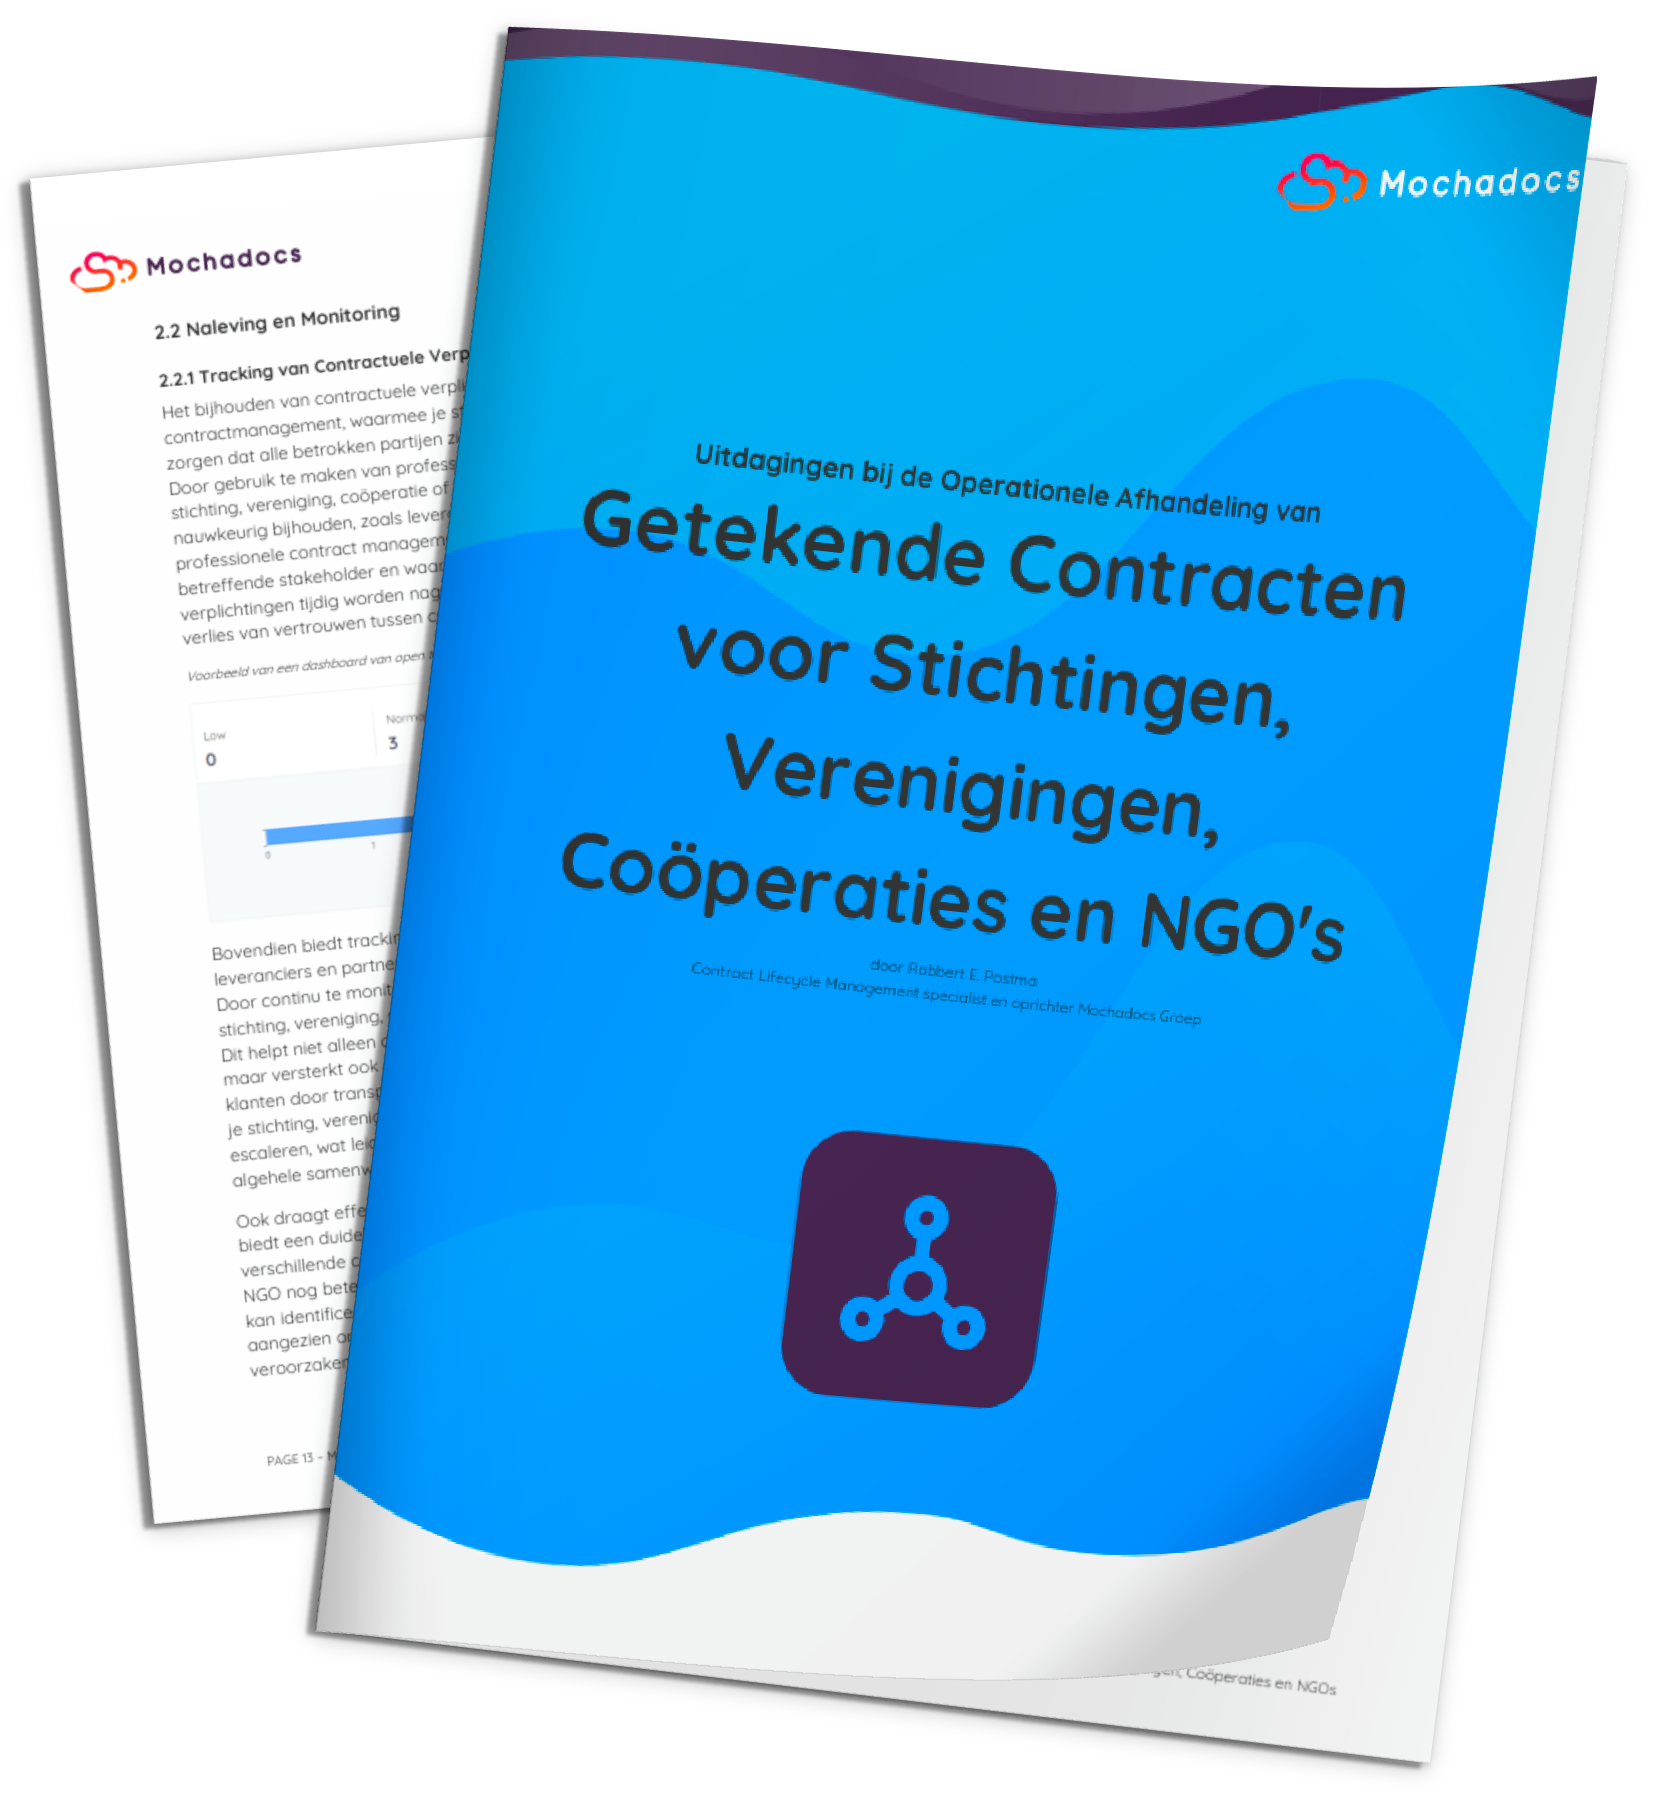 Uitdagingen bij de Operationele Afhandeling van Getekende Contracten voor Stichtingen, Verenigingen, Cooperaties en NGOs | Mochadocs